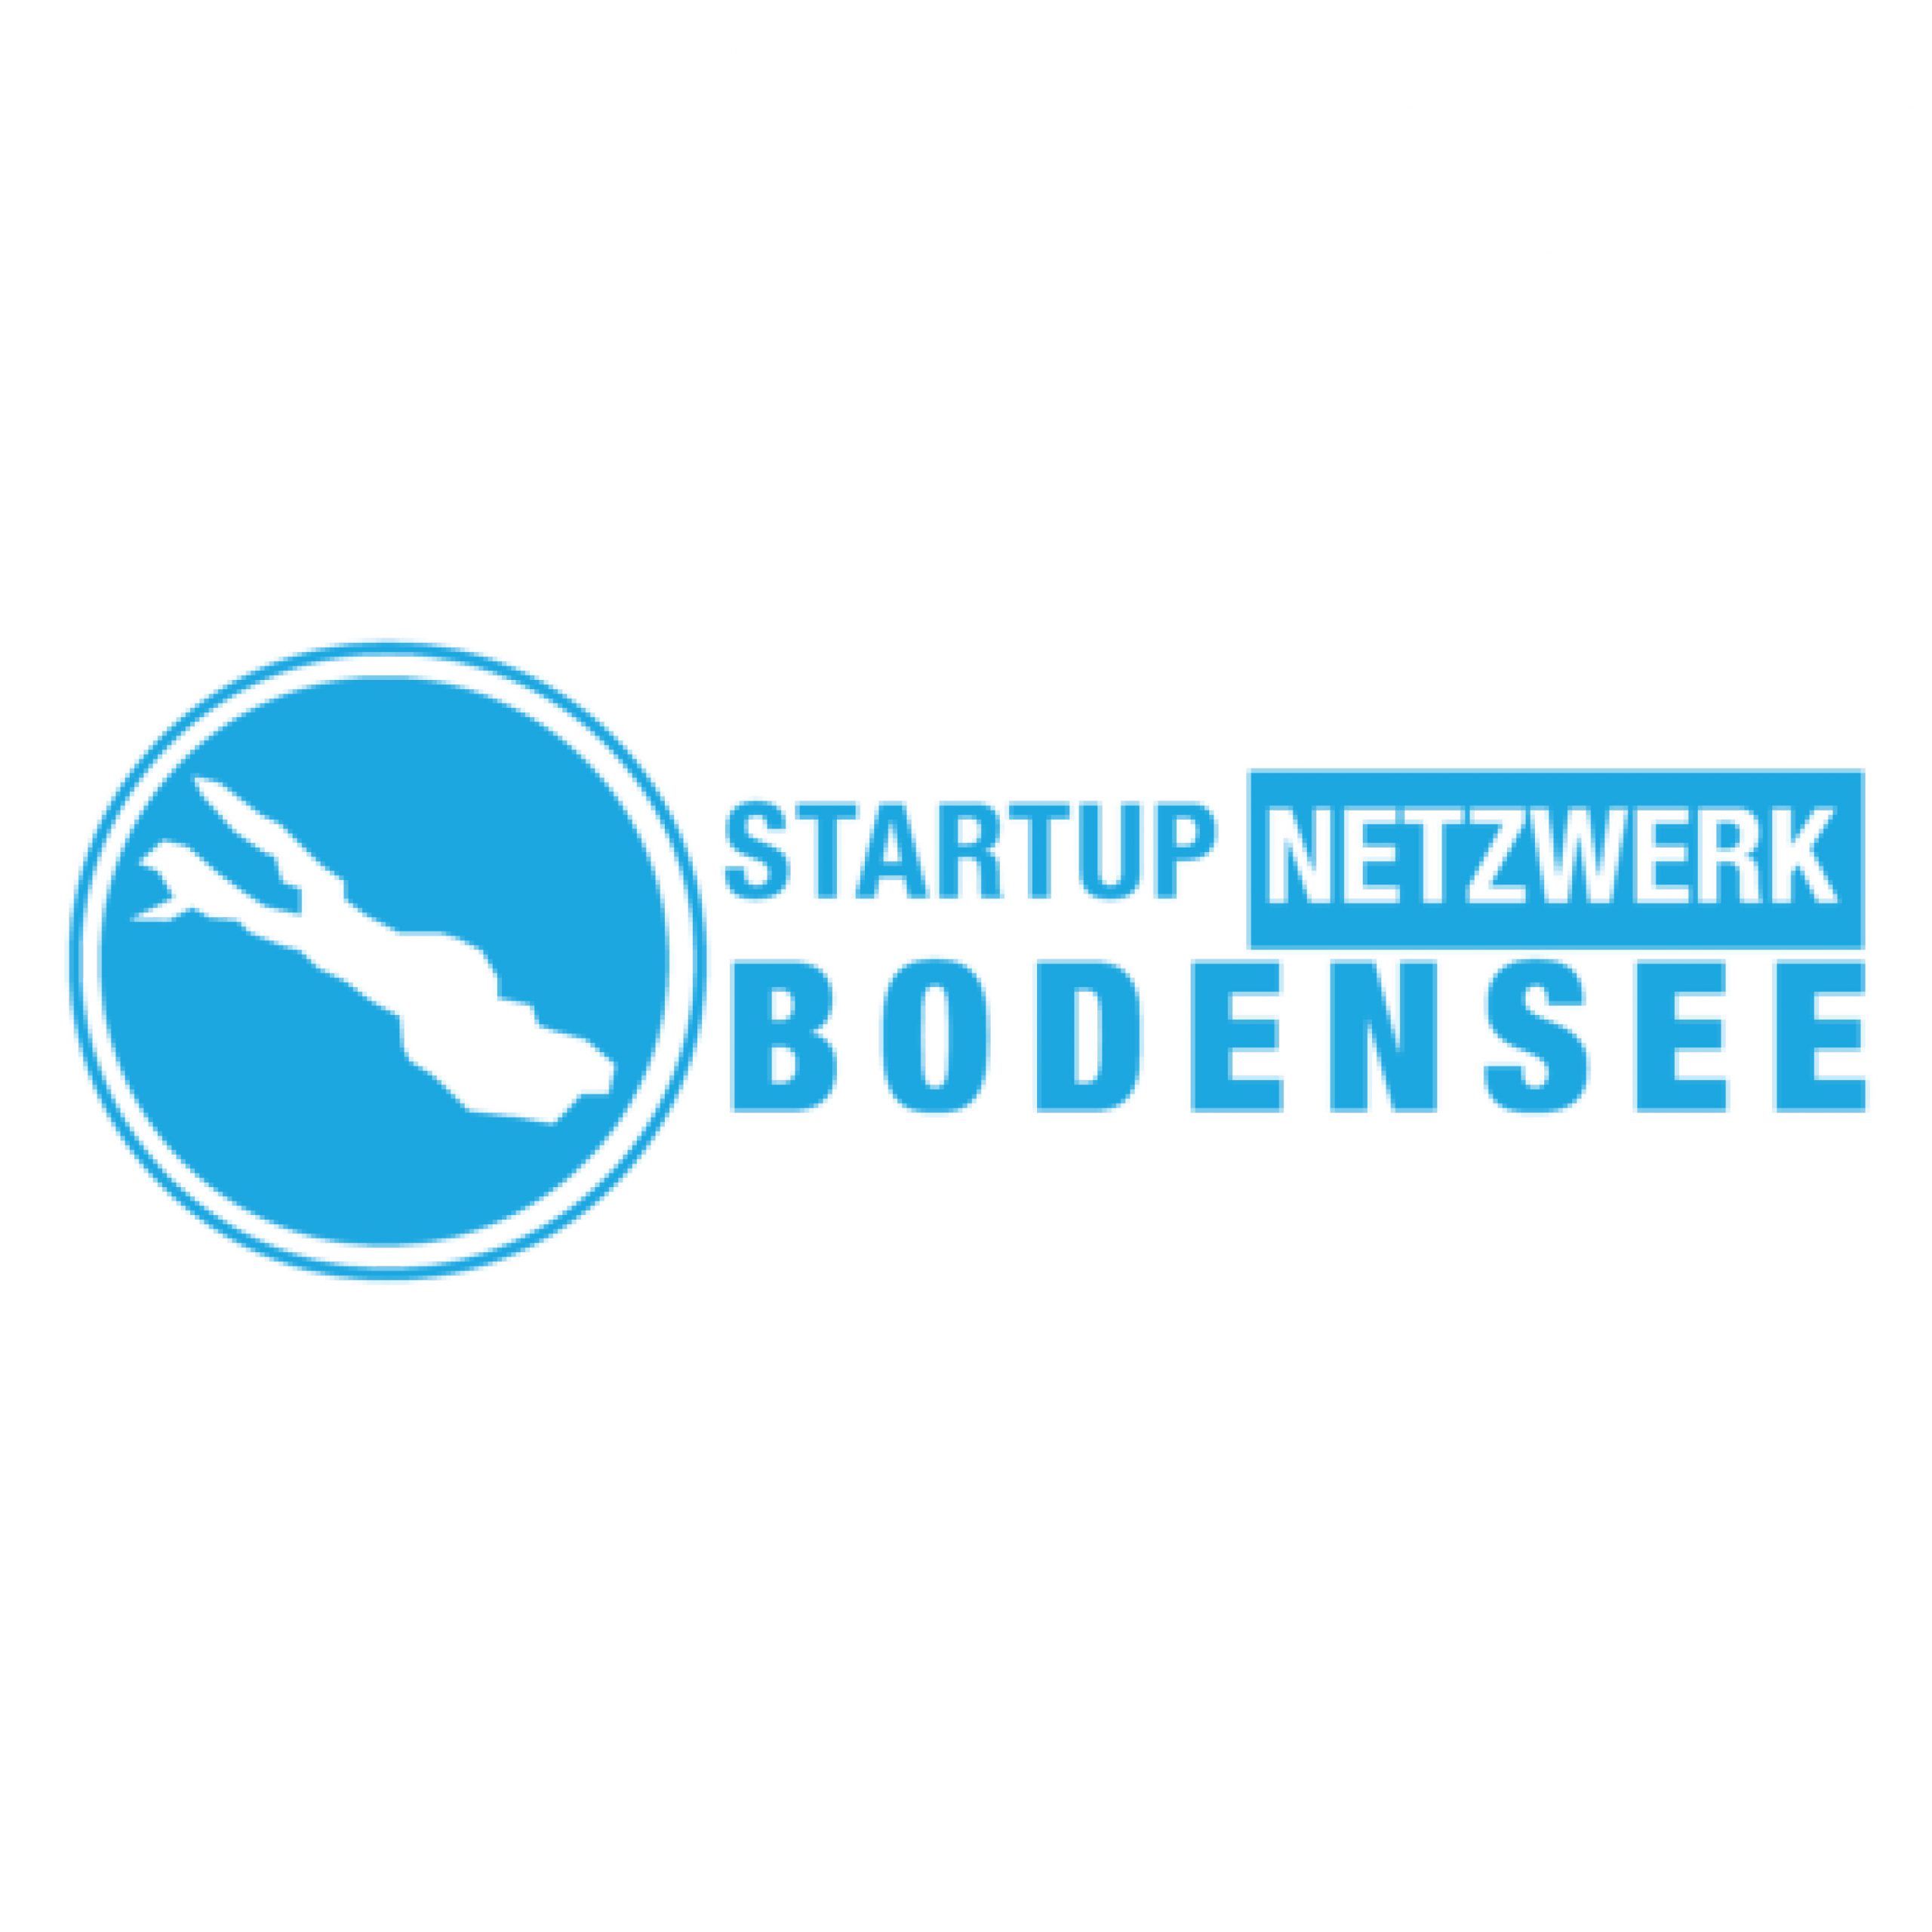 Startup Netzwerk Bodensee